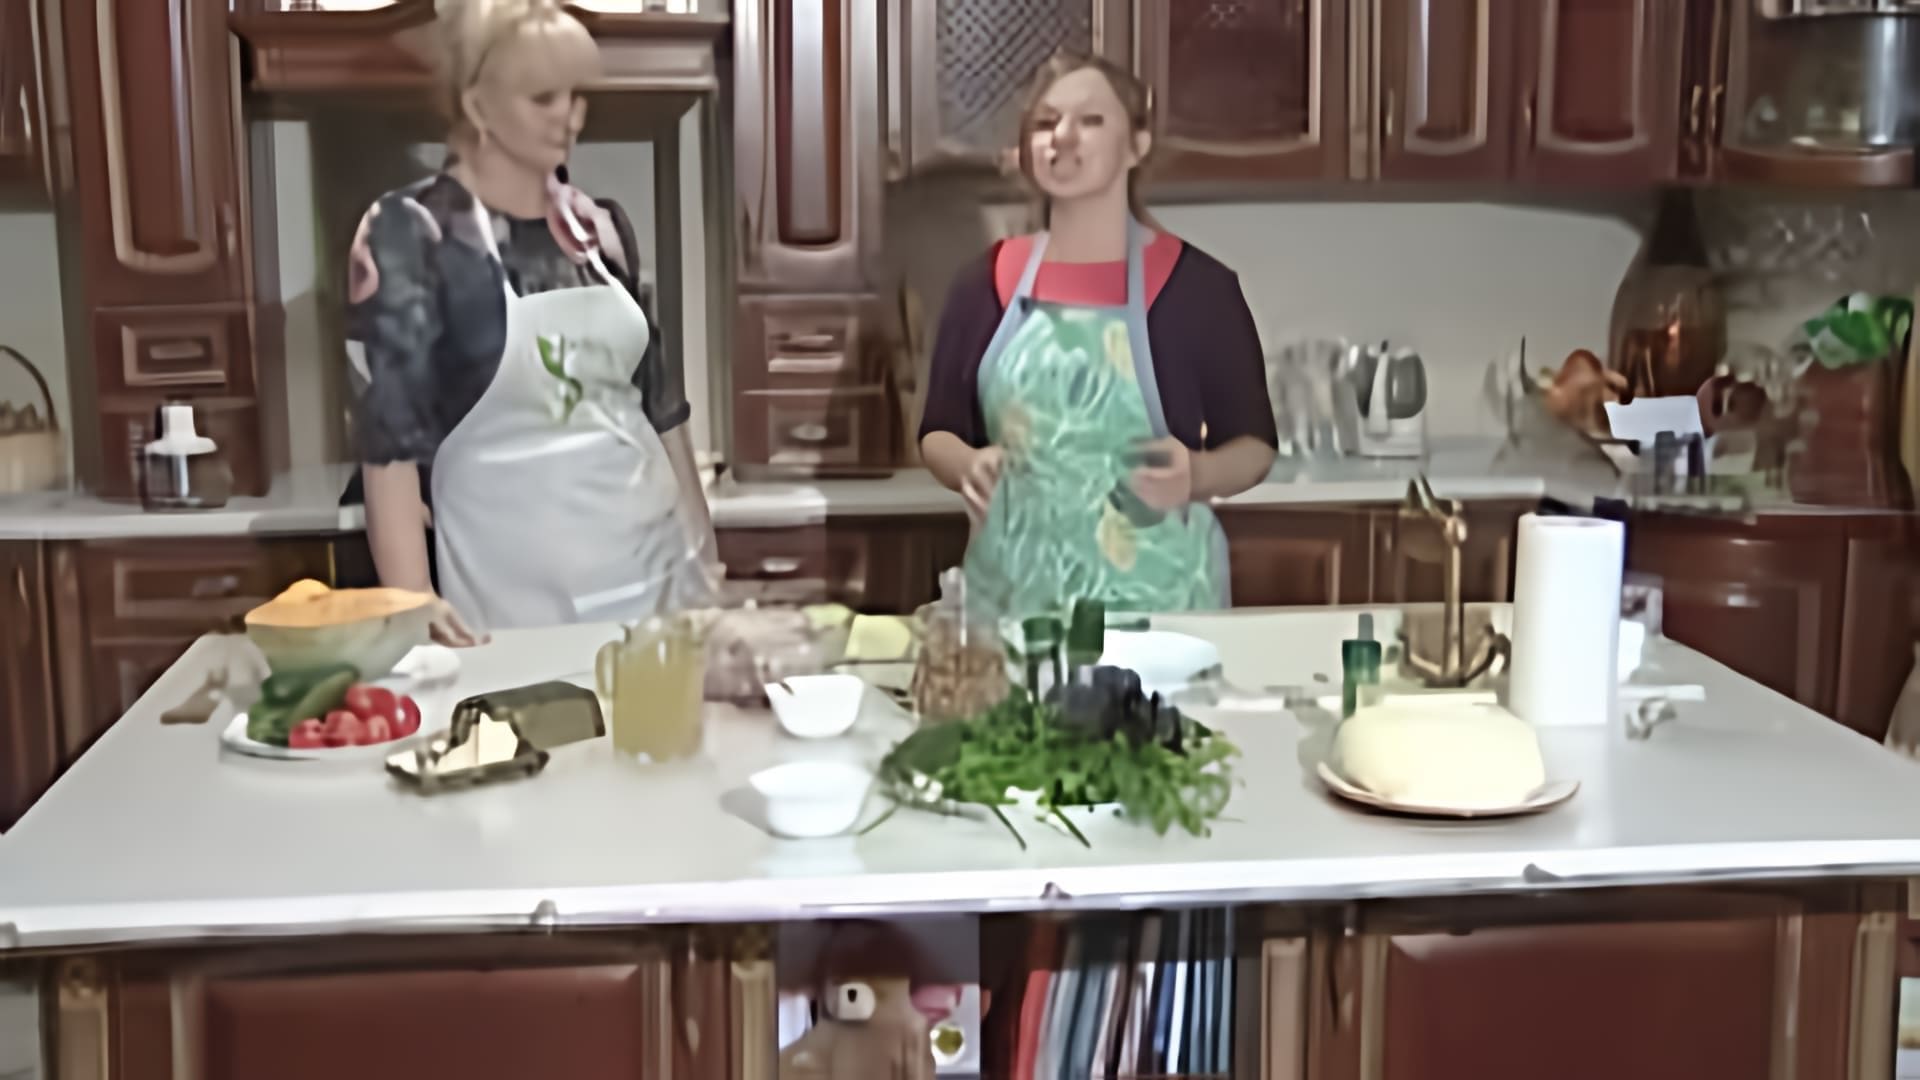 Дальневосточный рецепт - это видео-ролик, который представляет собой кулинарное шоу, где ведущий демонстрирует процесс приготовления осетинского национального блюда